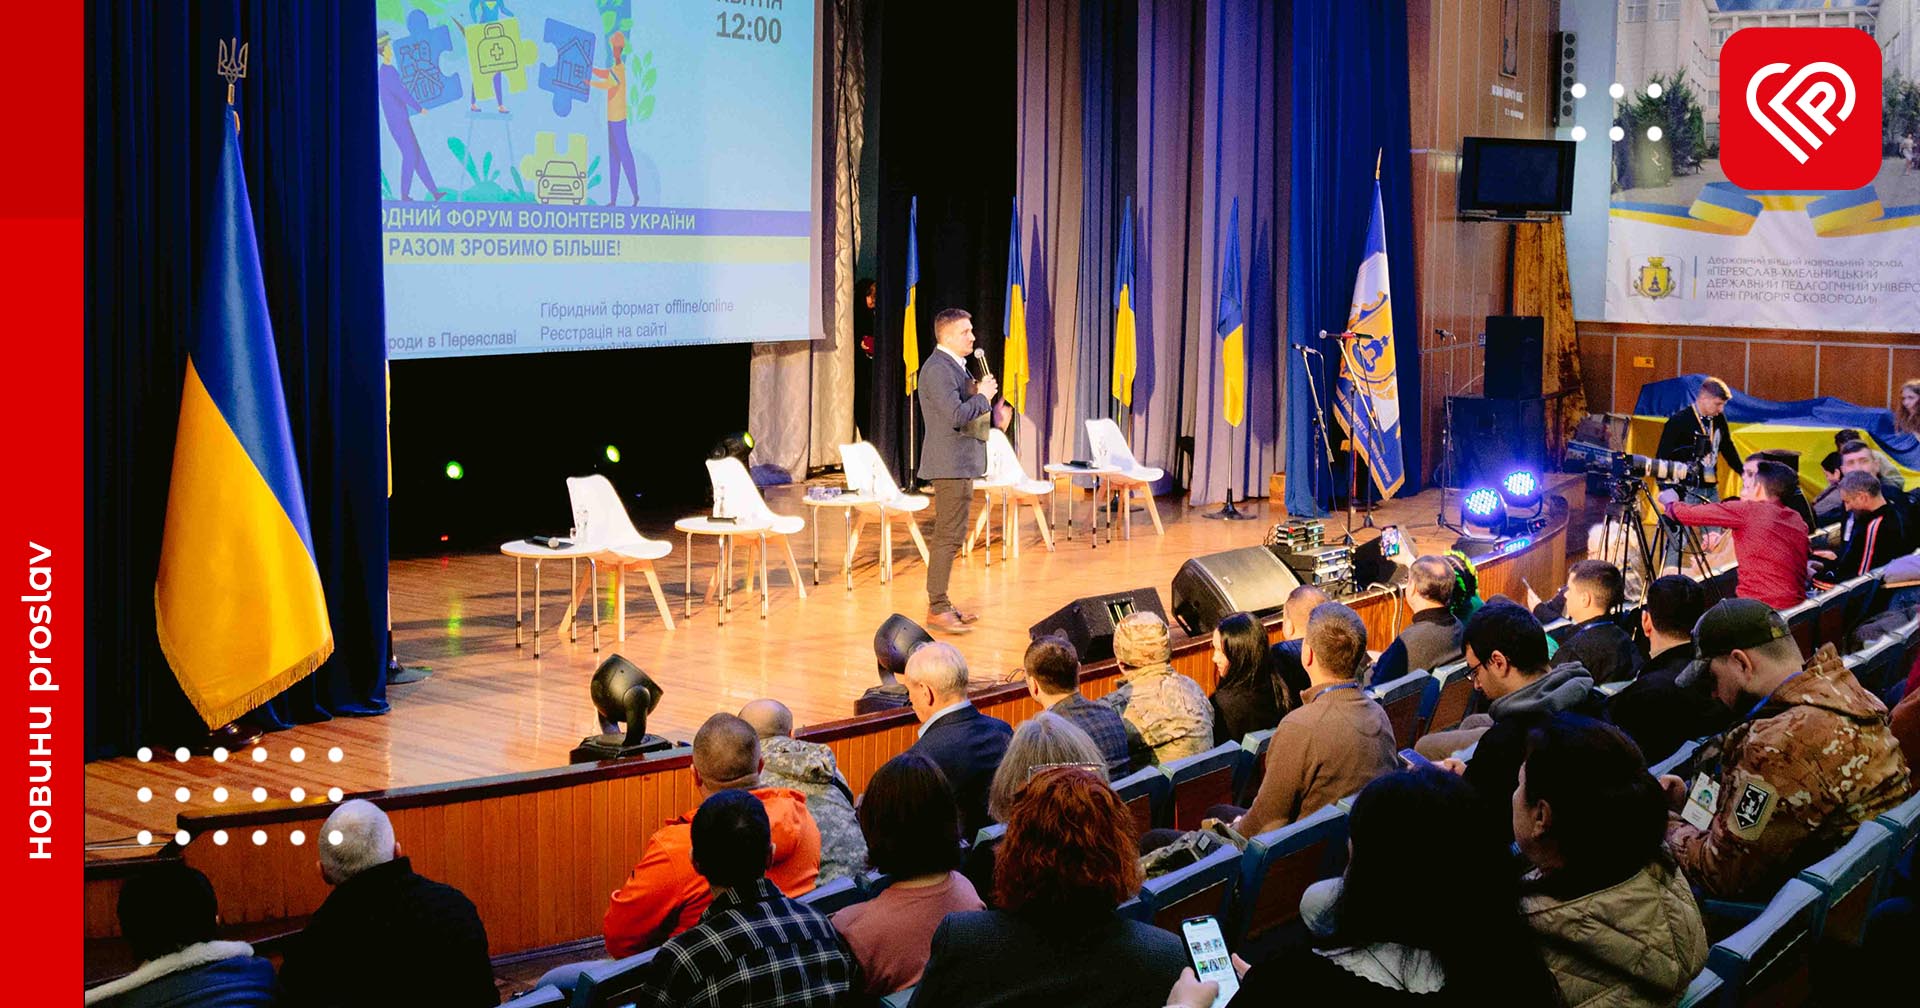 У Переяславі відбувся «Міжнародний форум волонтерів України». Чому це важливо та що вирішували учасники?